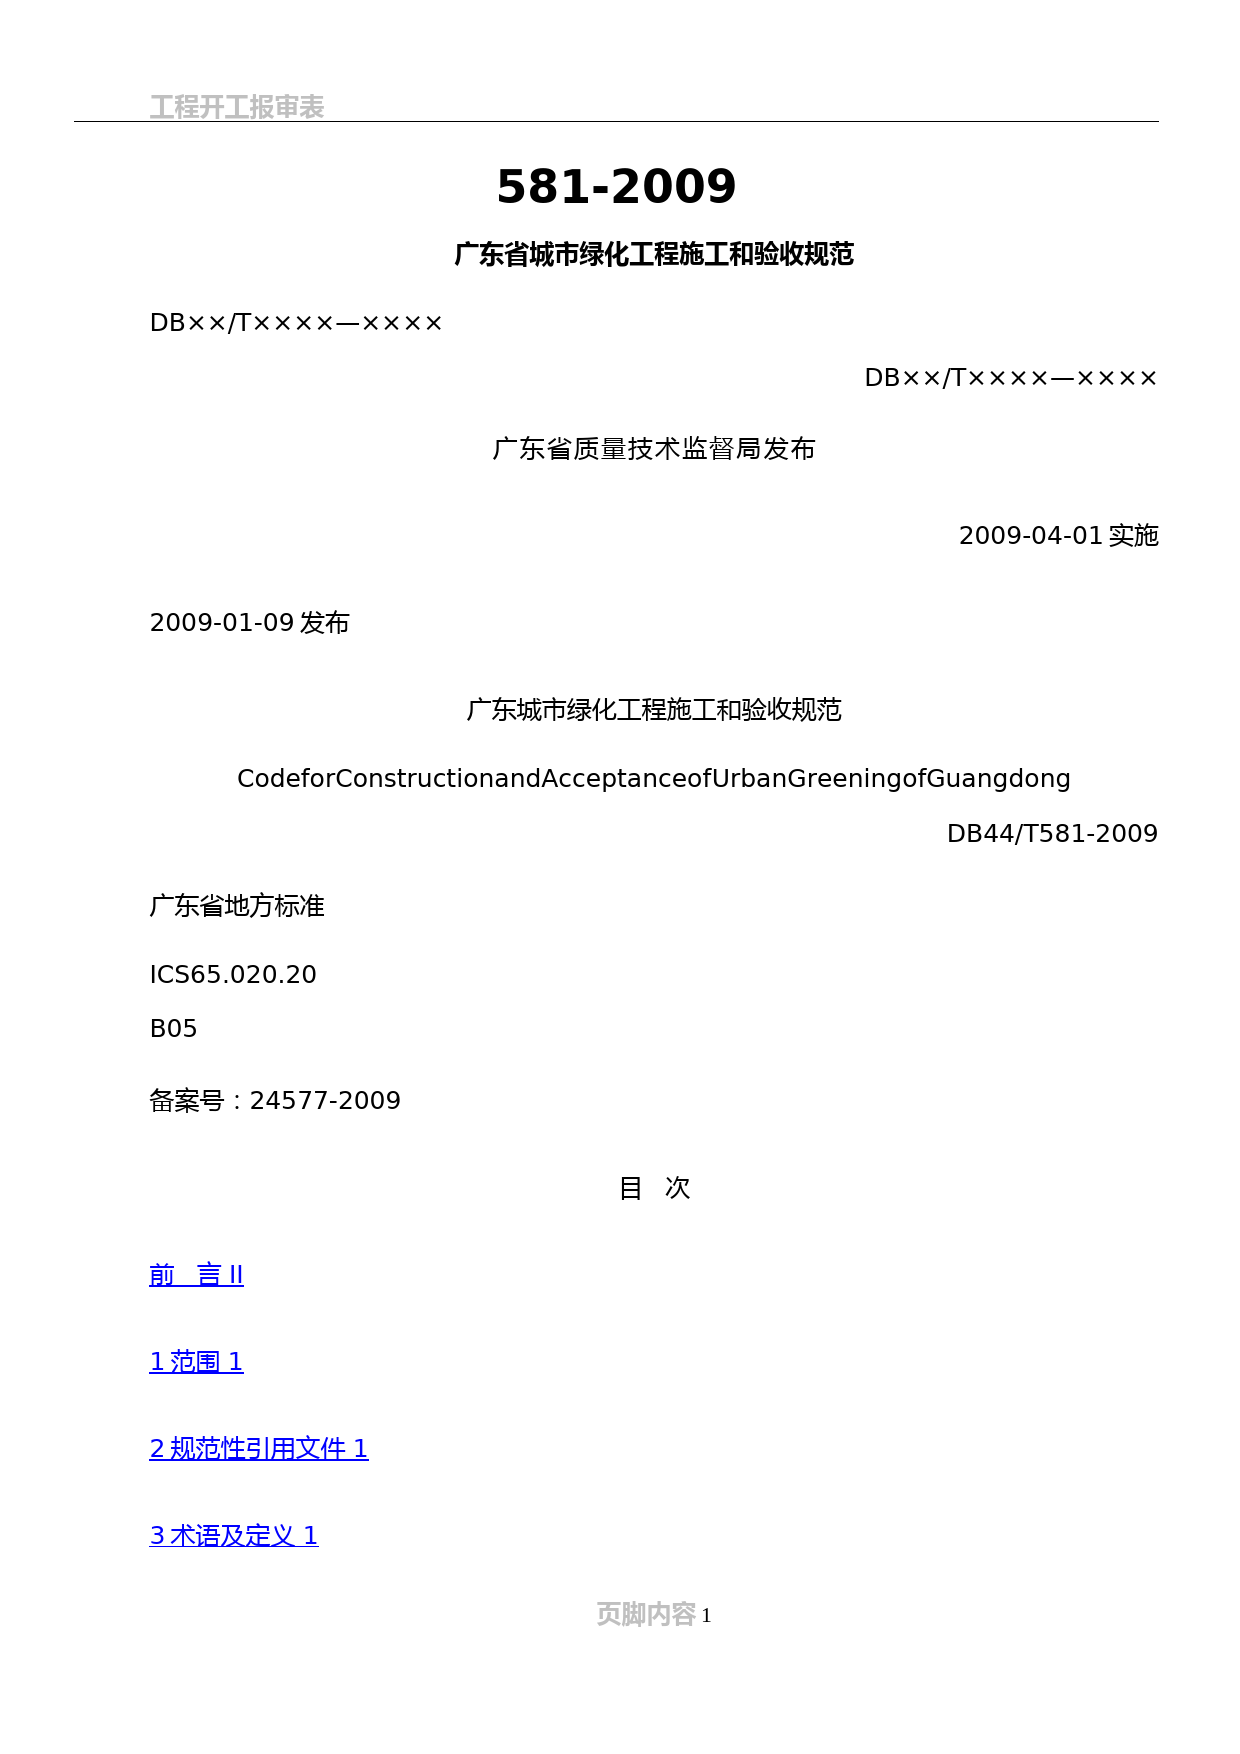 00-(规范正文)广东省城市绿化工程施工和验收规范-DB44-581-2009